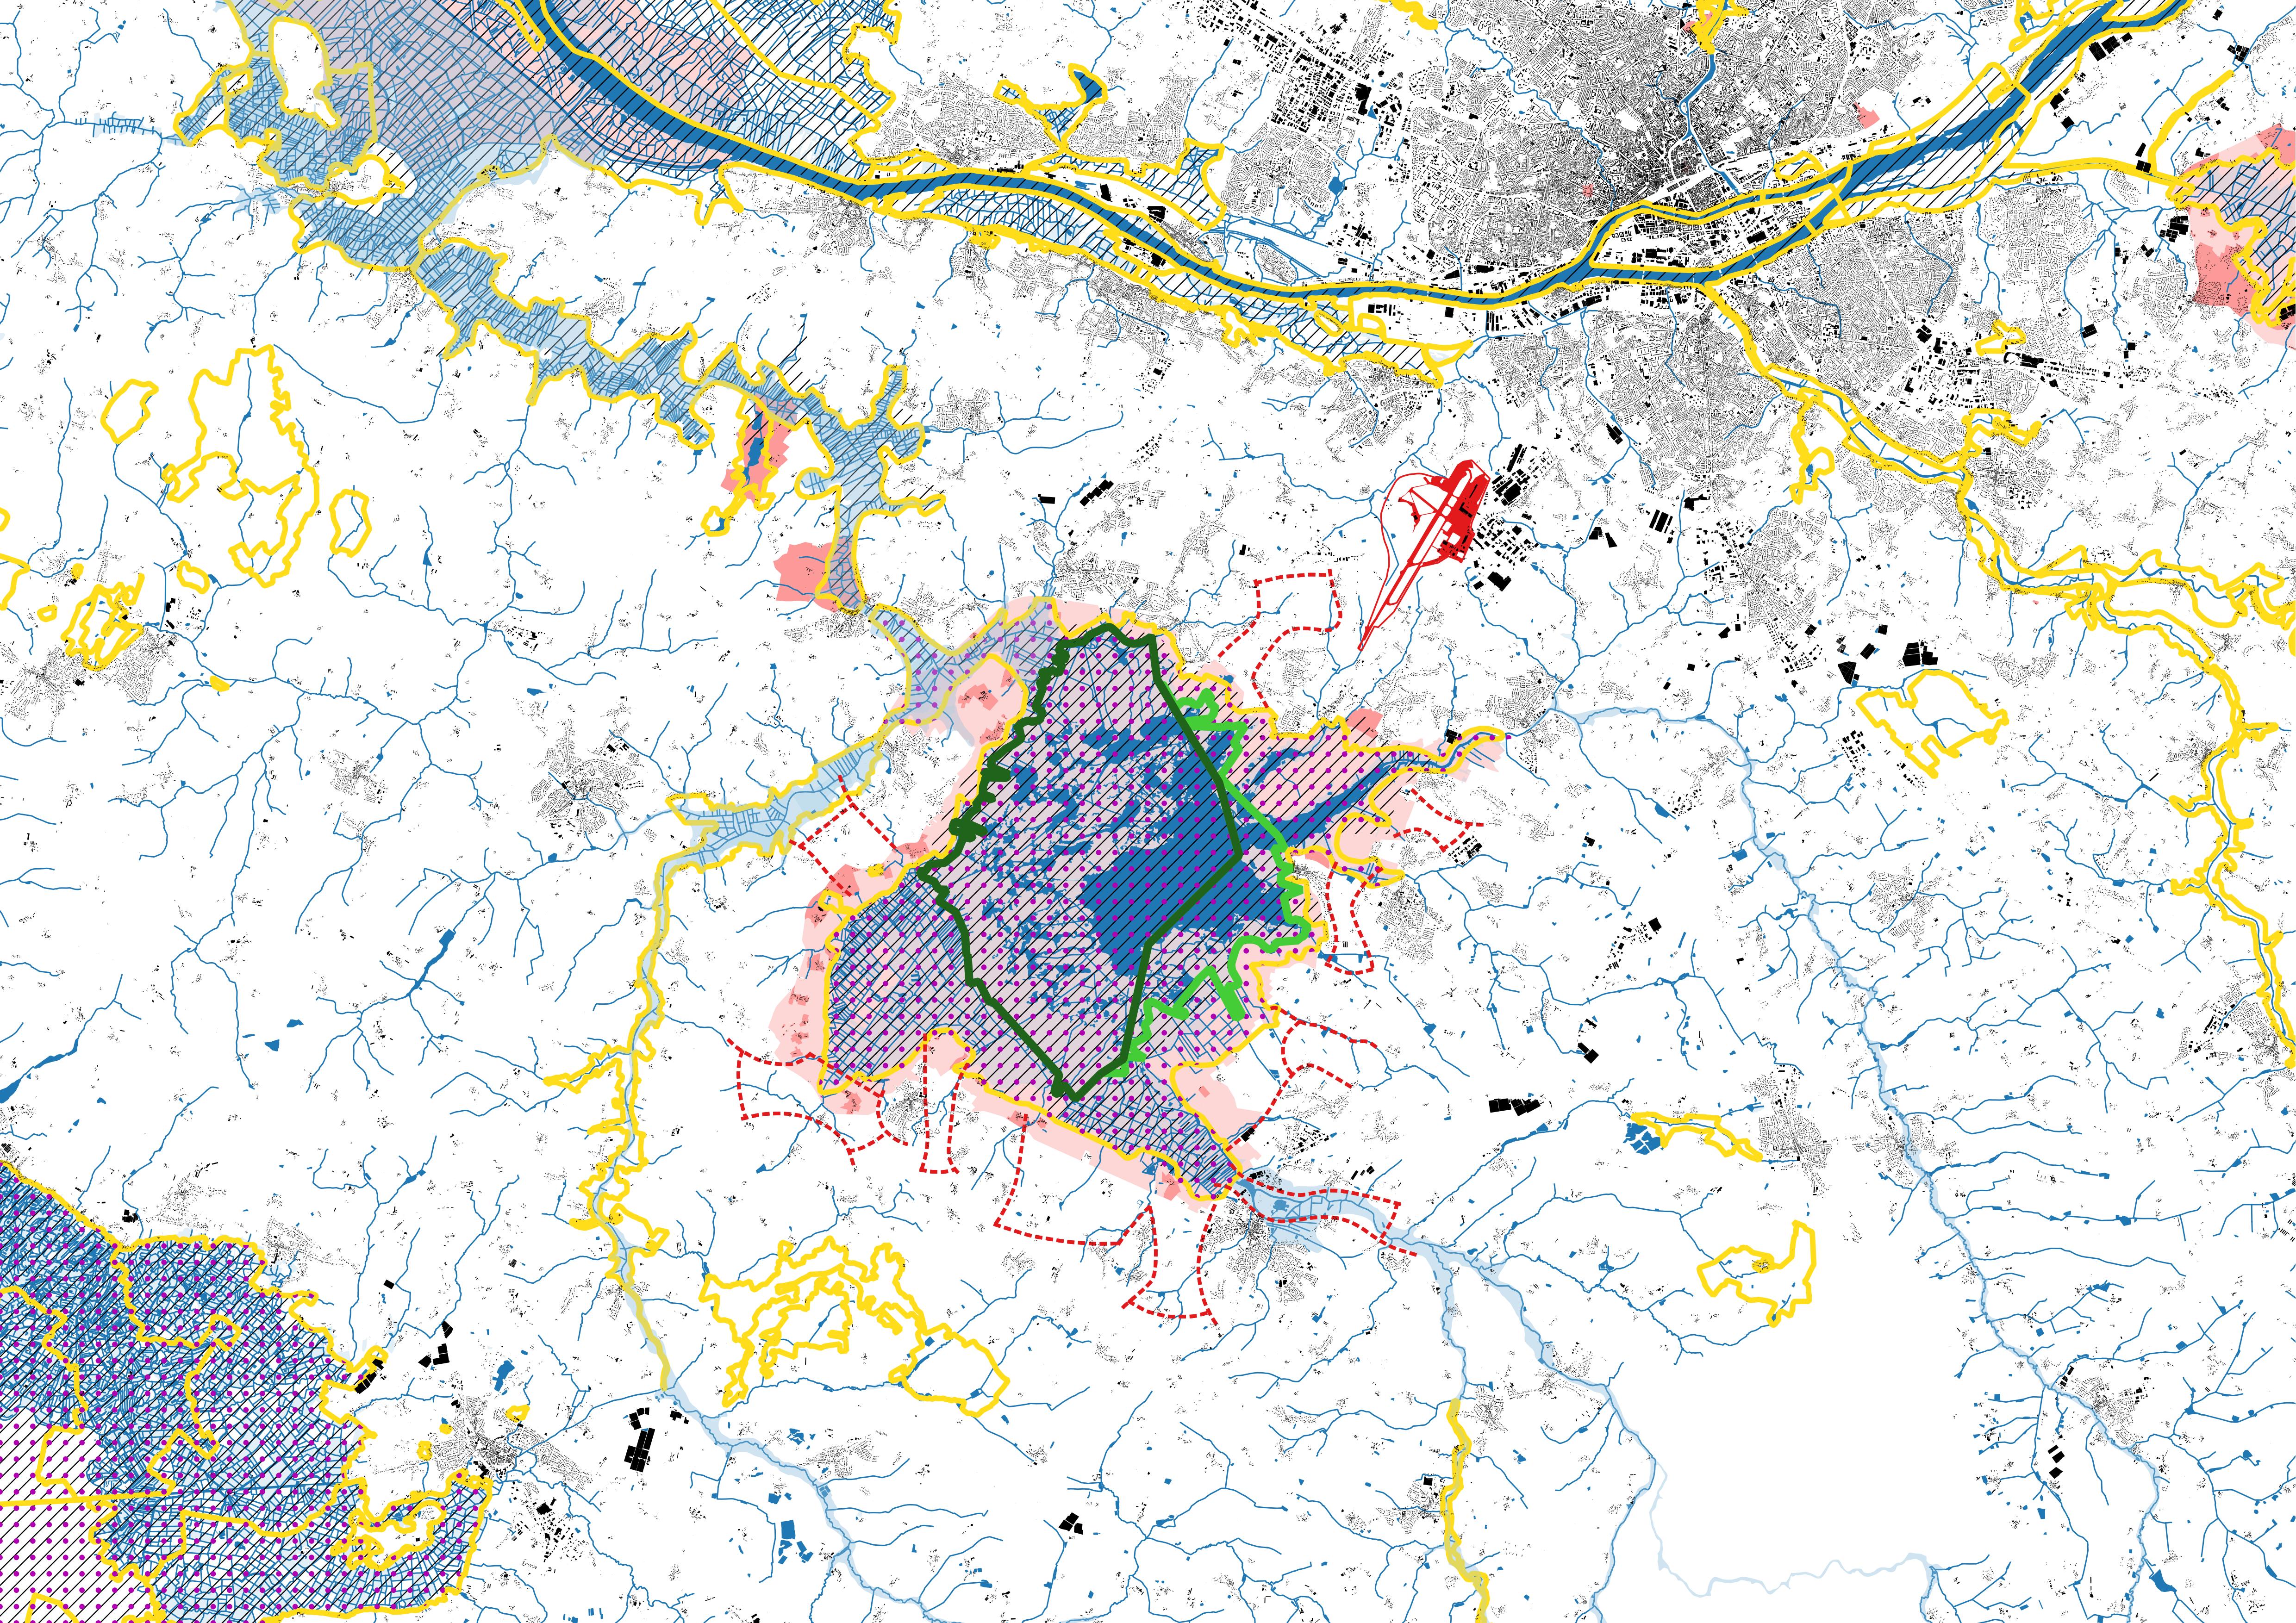 Carte des contraintes et des espaces protégés, quadrant Sud-Ouest nantais